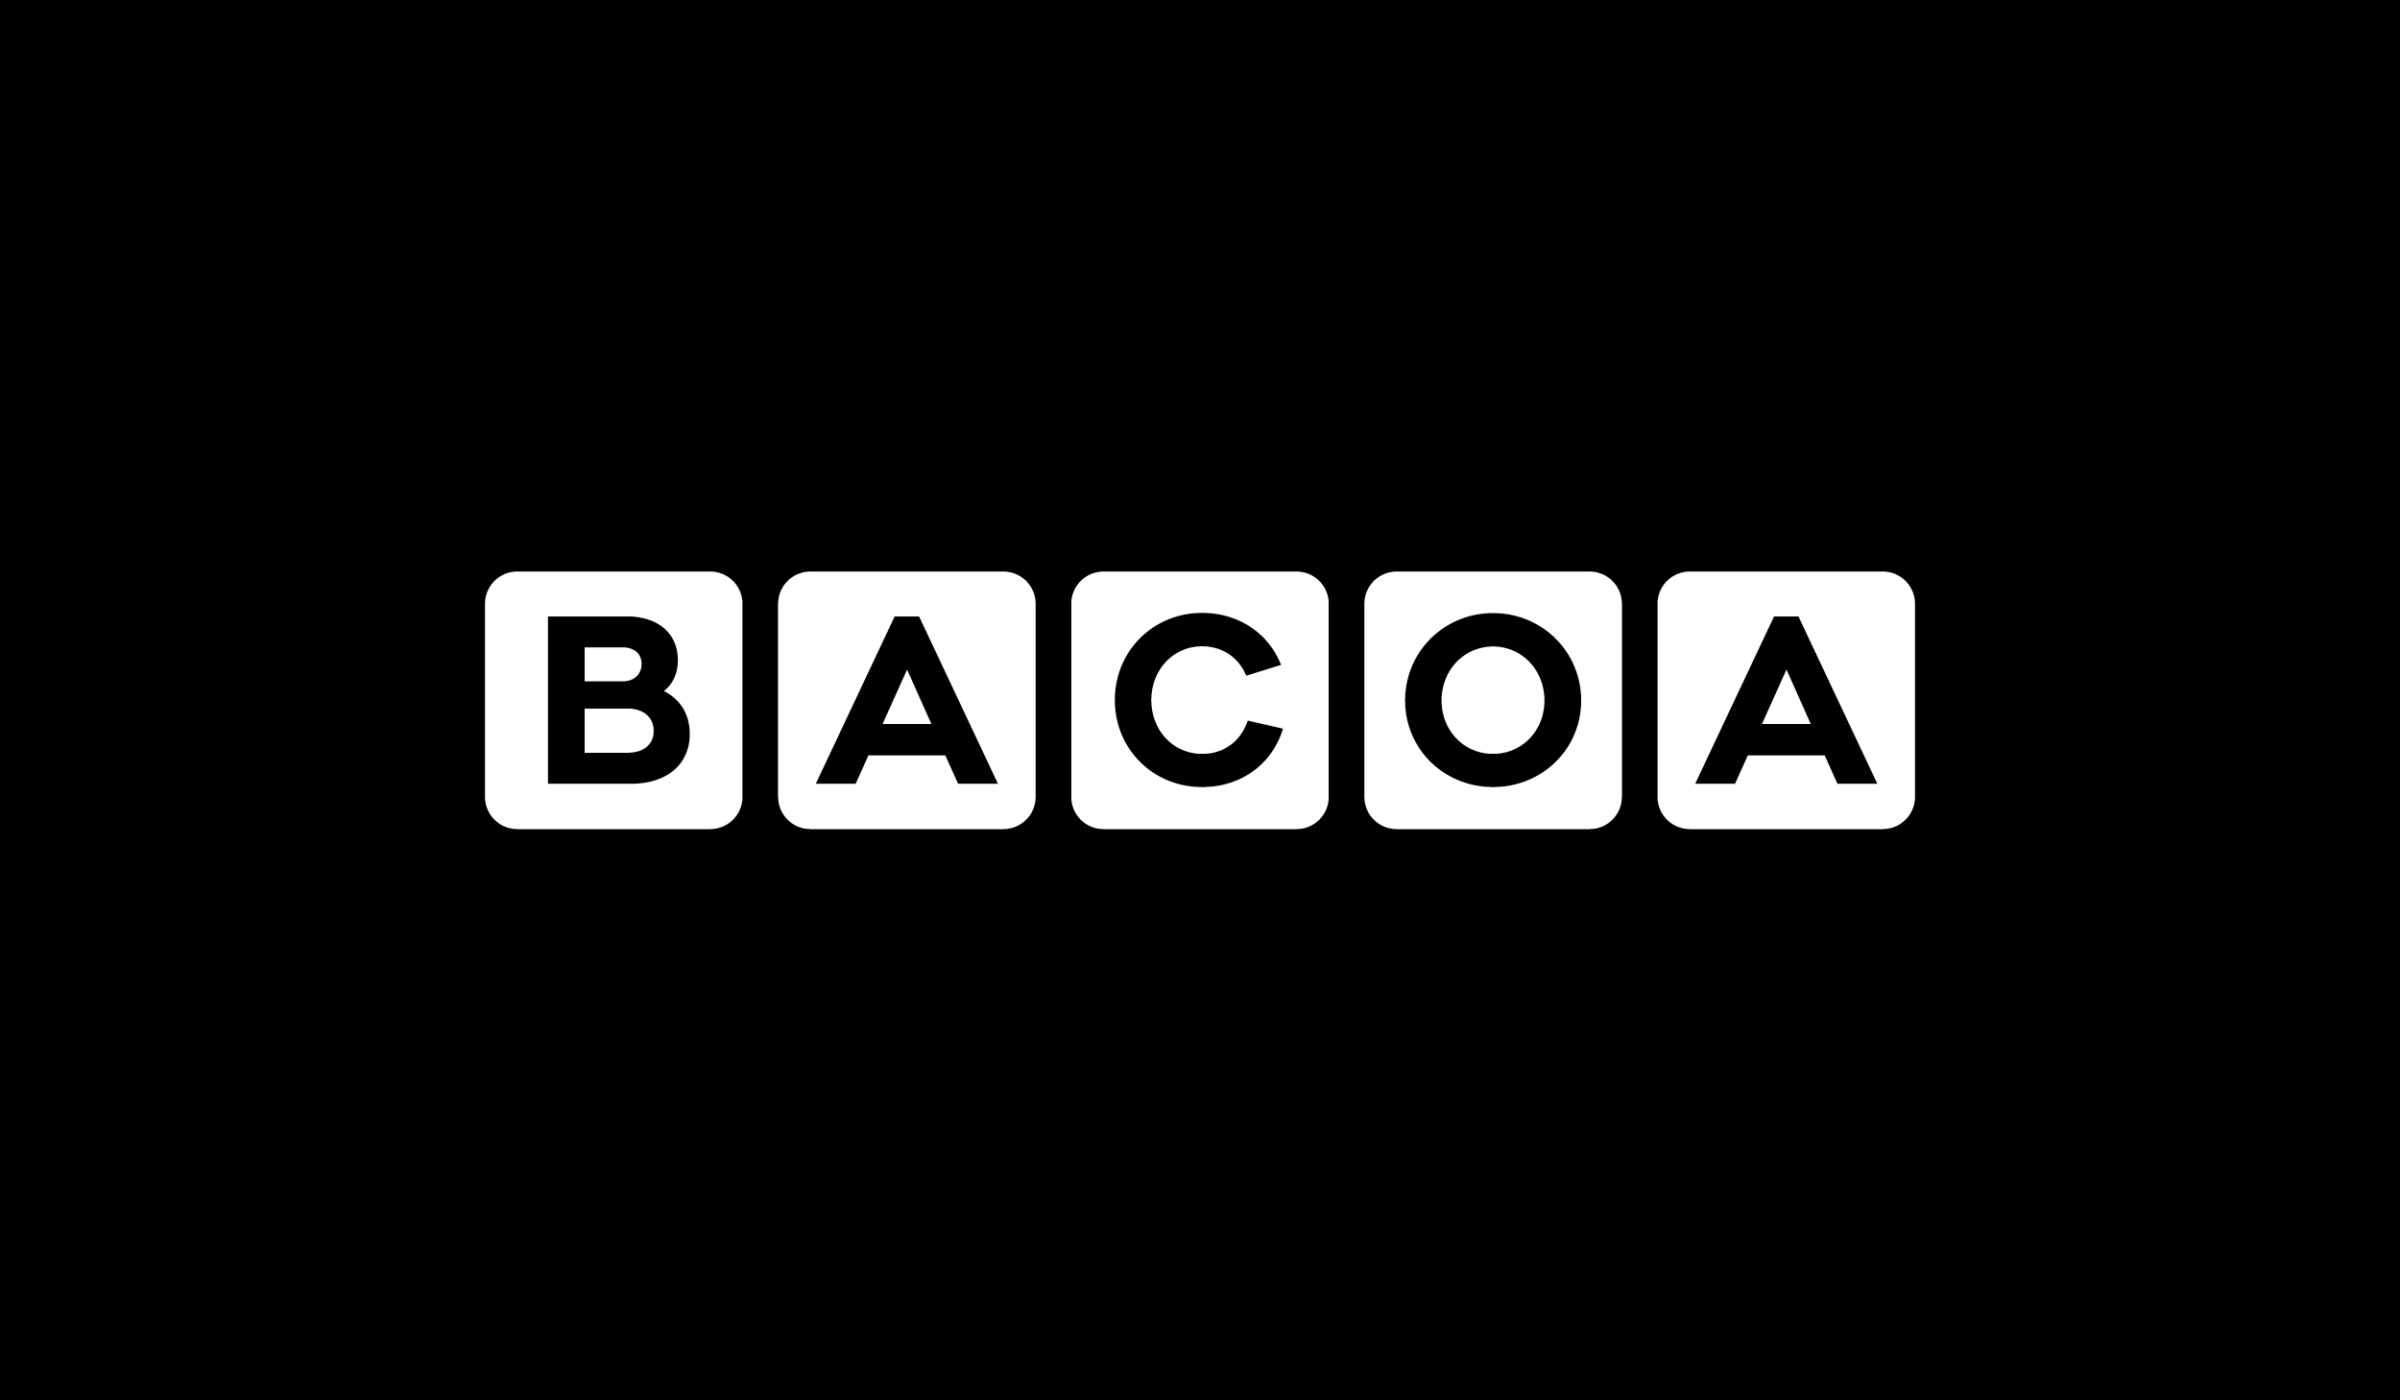 FOLCH - Bacoa